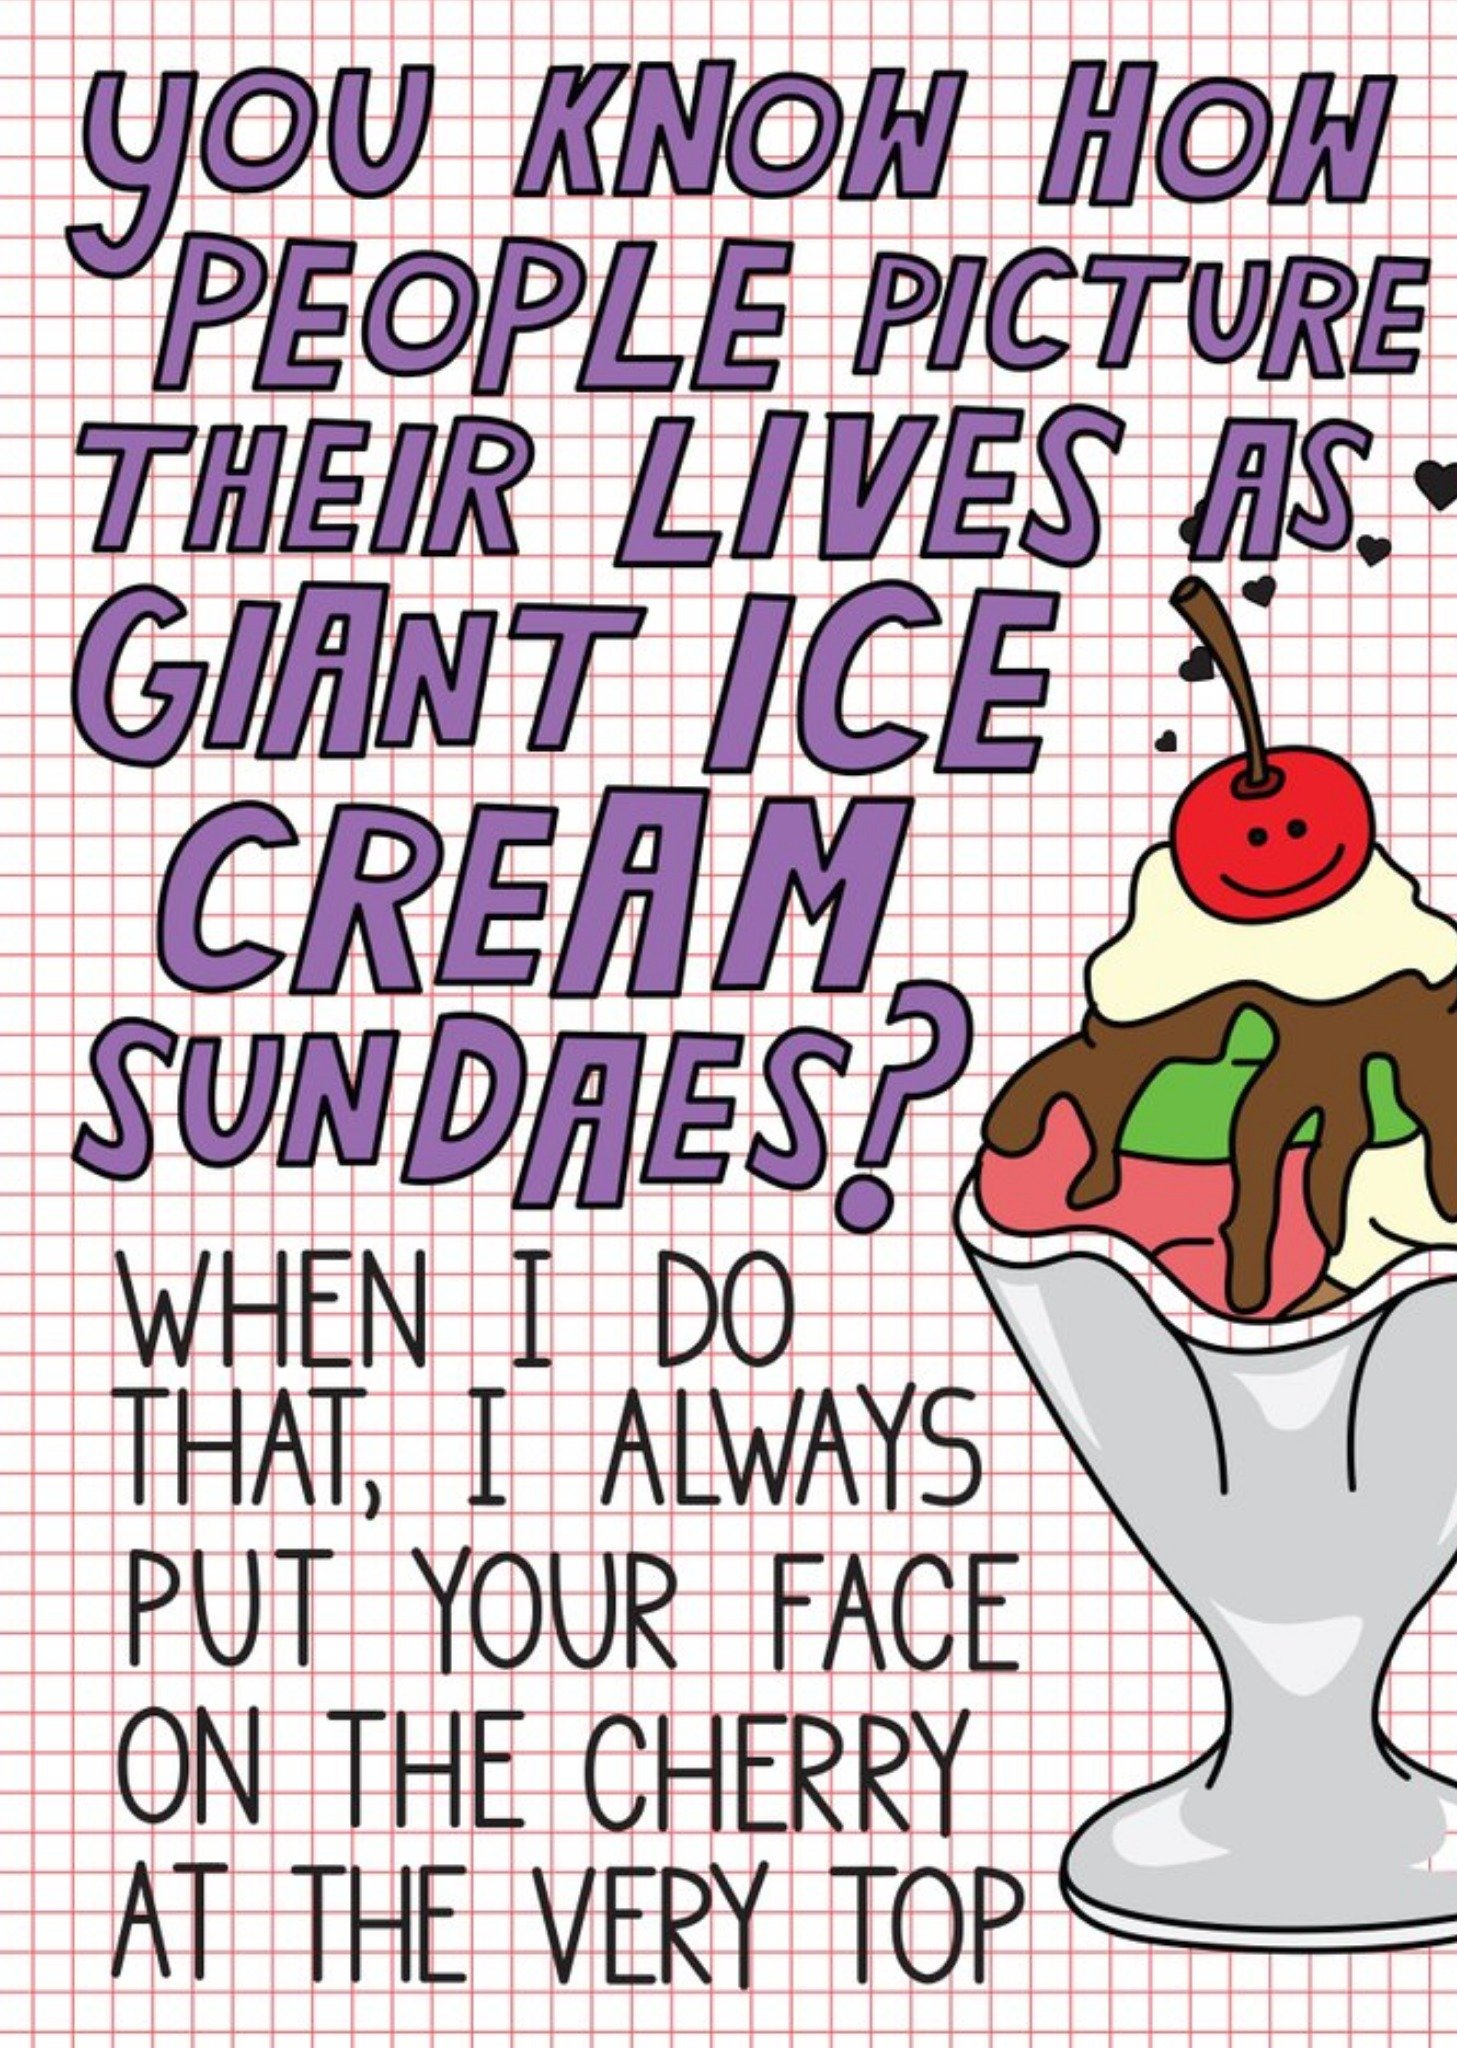 Moonpig Illustration Of An Ice Cream Sundae Thinking Of You Card, Large